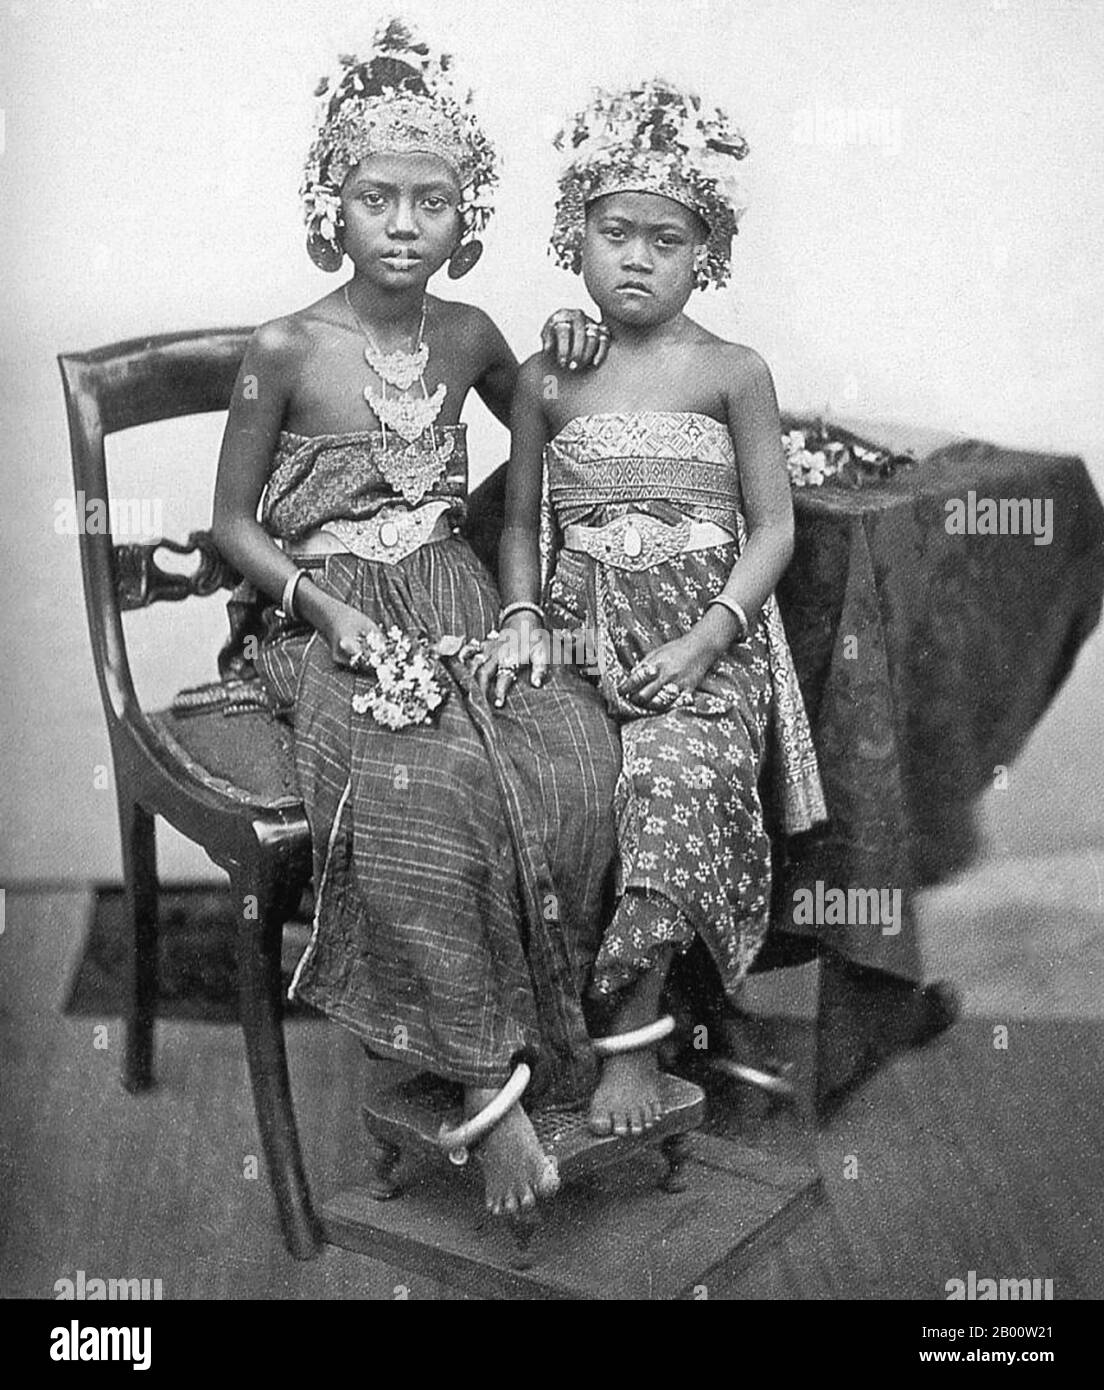 Indonésie : deux princesses balinais en régalia royale, c. 1900. Bali abrite la plus grande partie de la petite minorité hindoue de l'Indonésie, avec environ 92% de la population de 4 millions de l'île adhérant à l'hindouisme balinais, tandis que la plupart des autres suivent l'islam. Bali est la plus grande destination touristique d'Indonésie et est réputée pour ses arts très développés, y compris la danse traditionnelle et moderne, la sculpture, la peinture, la maroquinerie, le travail du métal et la musique. Banque D'Images